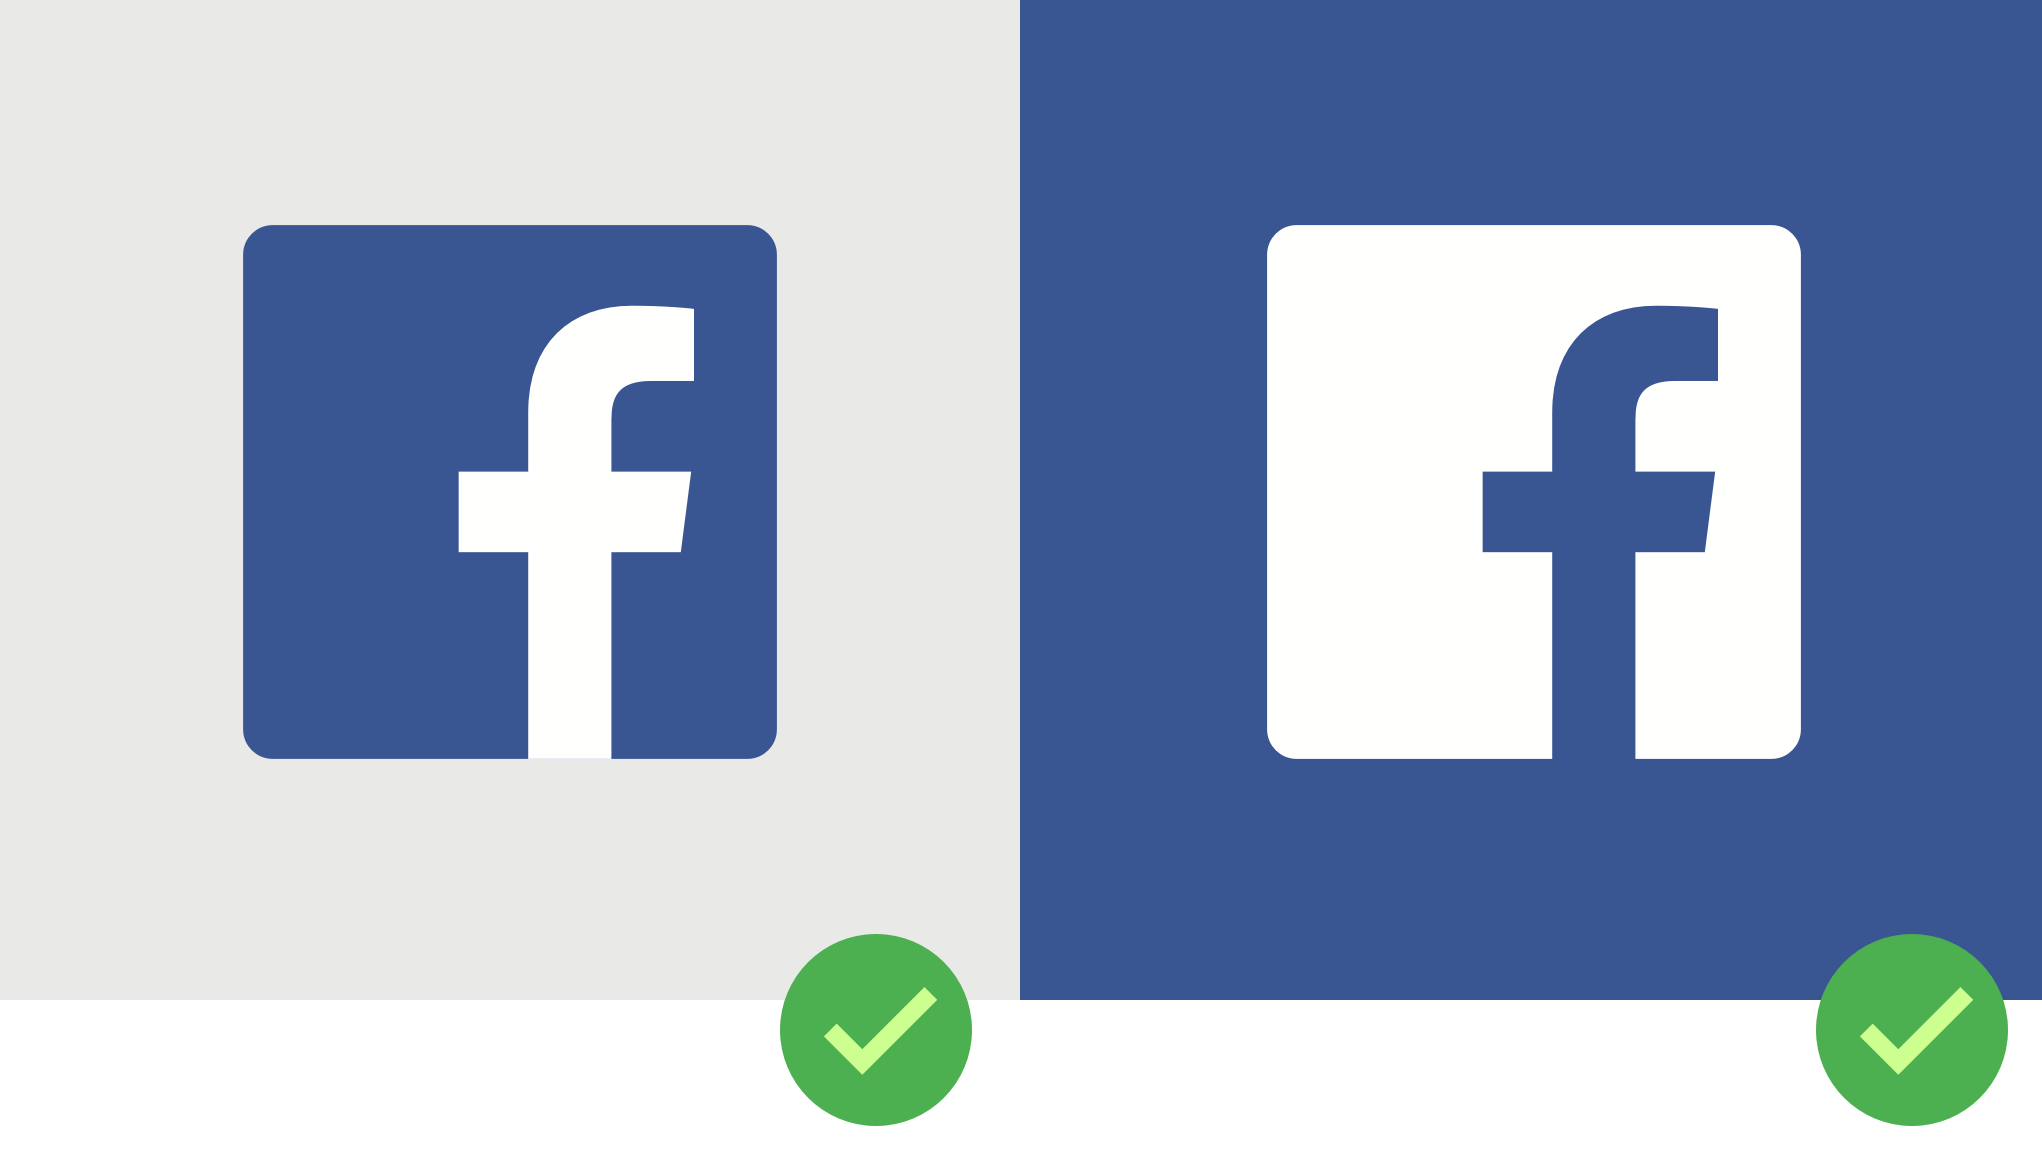 Fecabook Logo - Facebook Logo Icon Png Icon Library